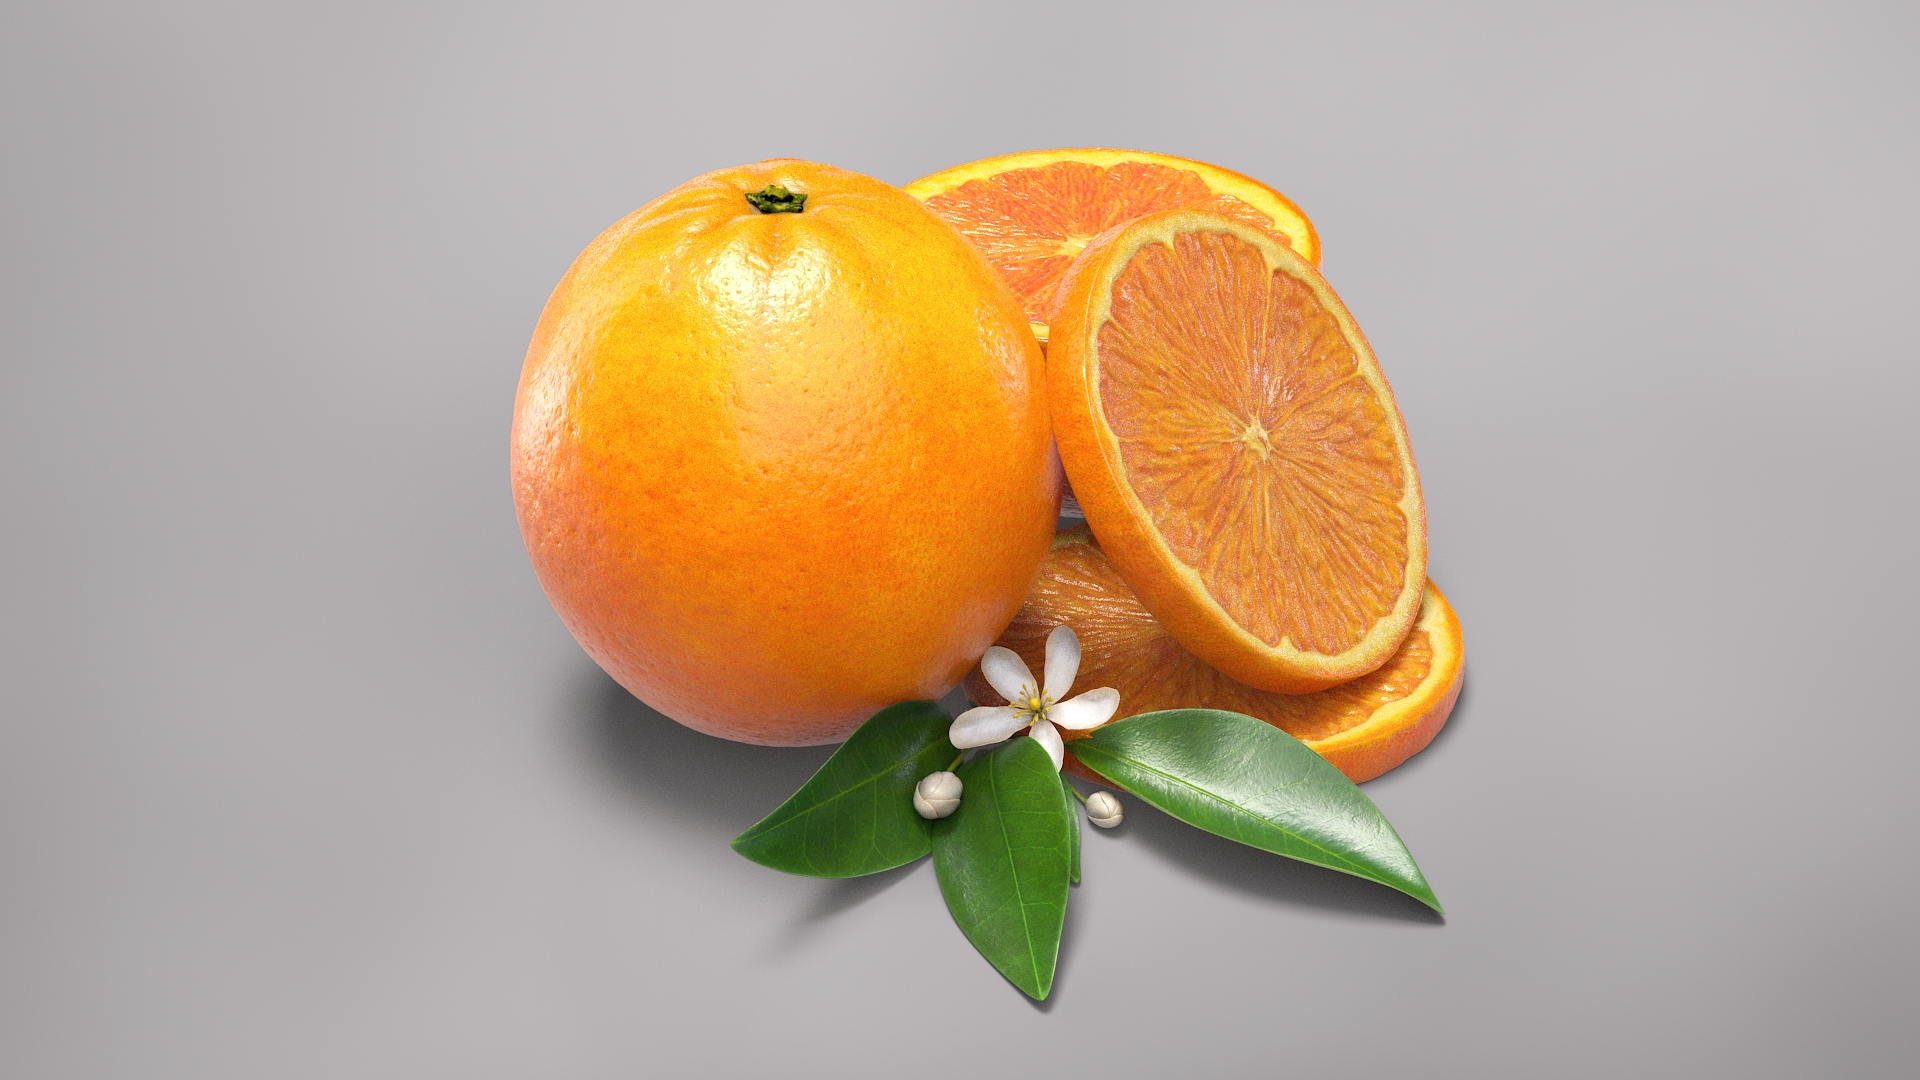 oranges realistic real model https://p.turbosquid.com/ts-thumb/61/kIWTMq/pB/beauty/jpg/1605213446/1920x1080/turn_fit_q99/e5cc521bd9d5a27d9a80f85fa2a9993c6b57de08/beauty-1.jpg